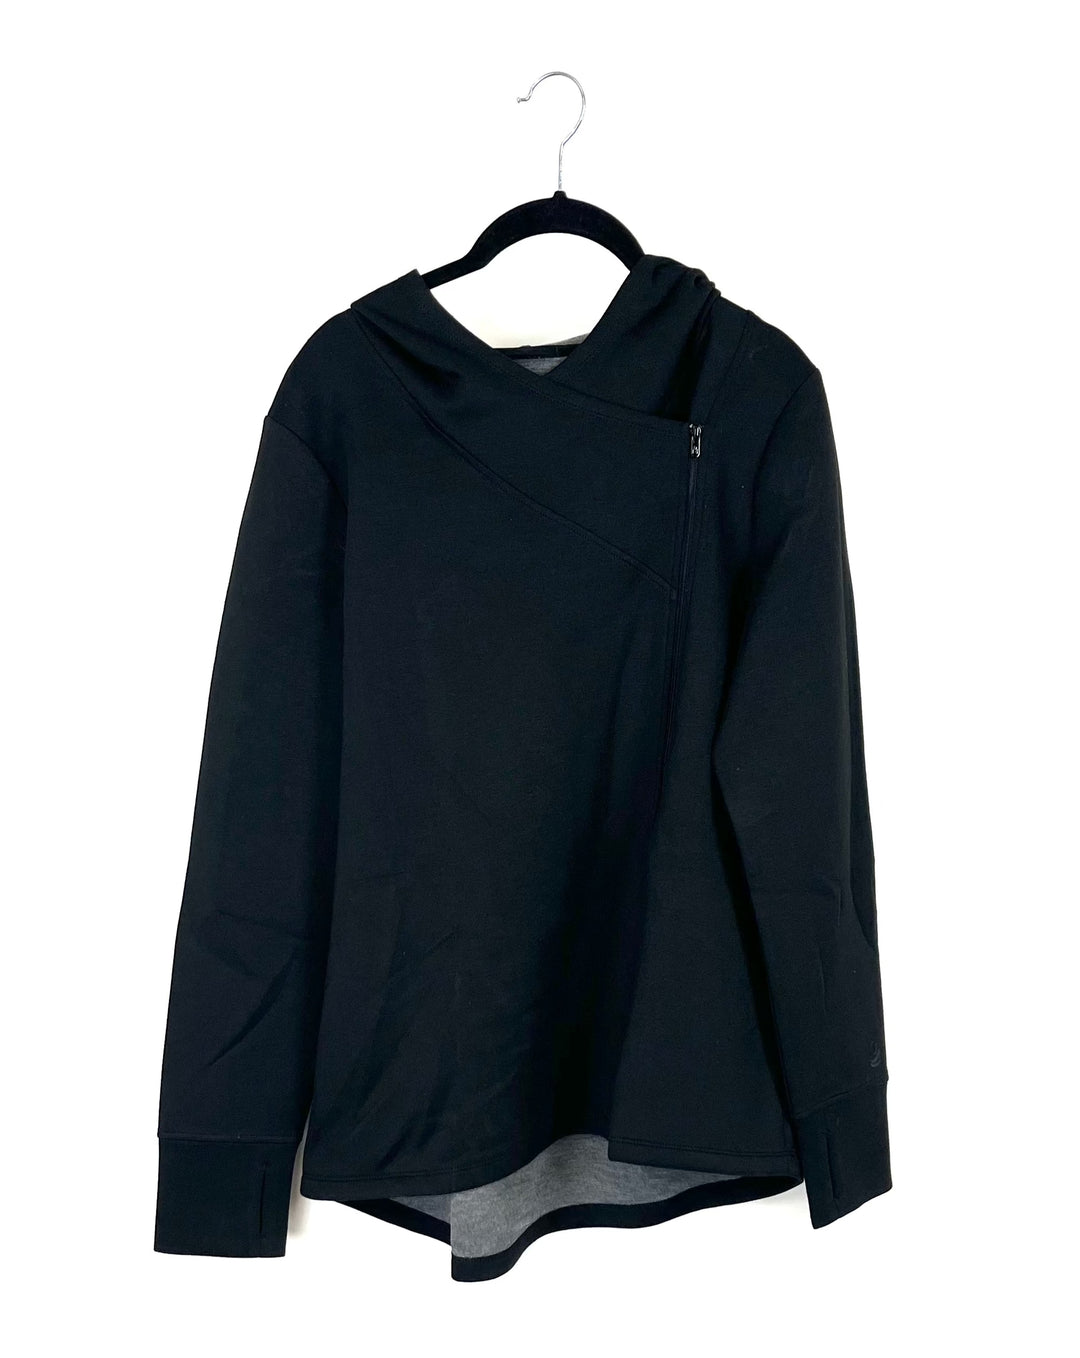 Black Asymmetrical Zip Up Jacket - Size 6/8